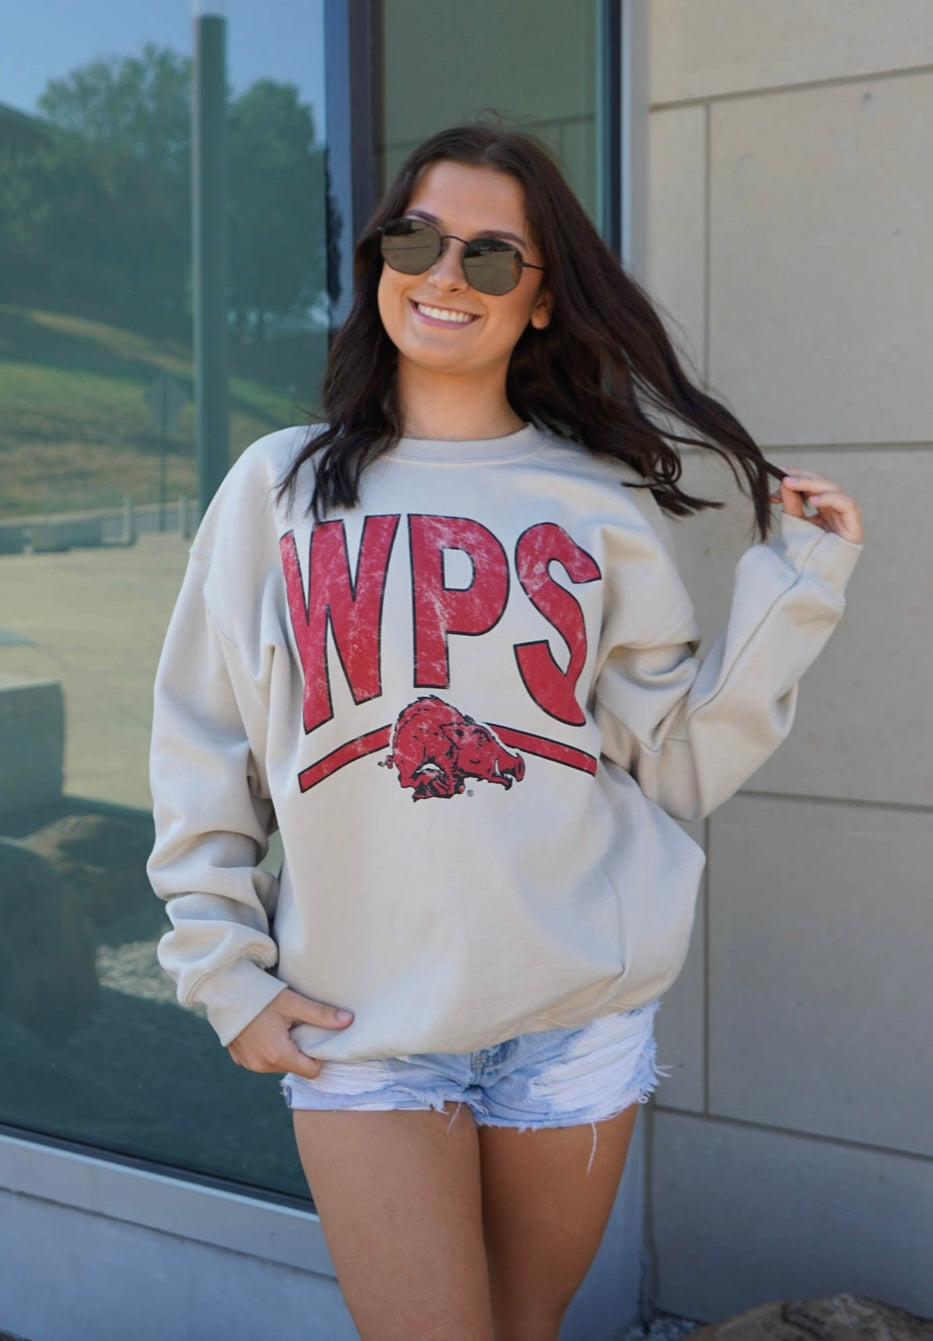 WPS Cream Sweatshirt